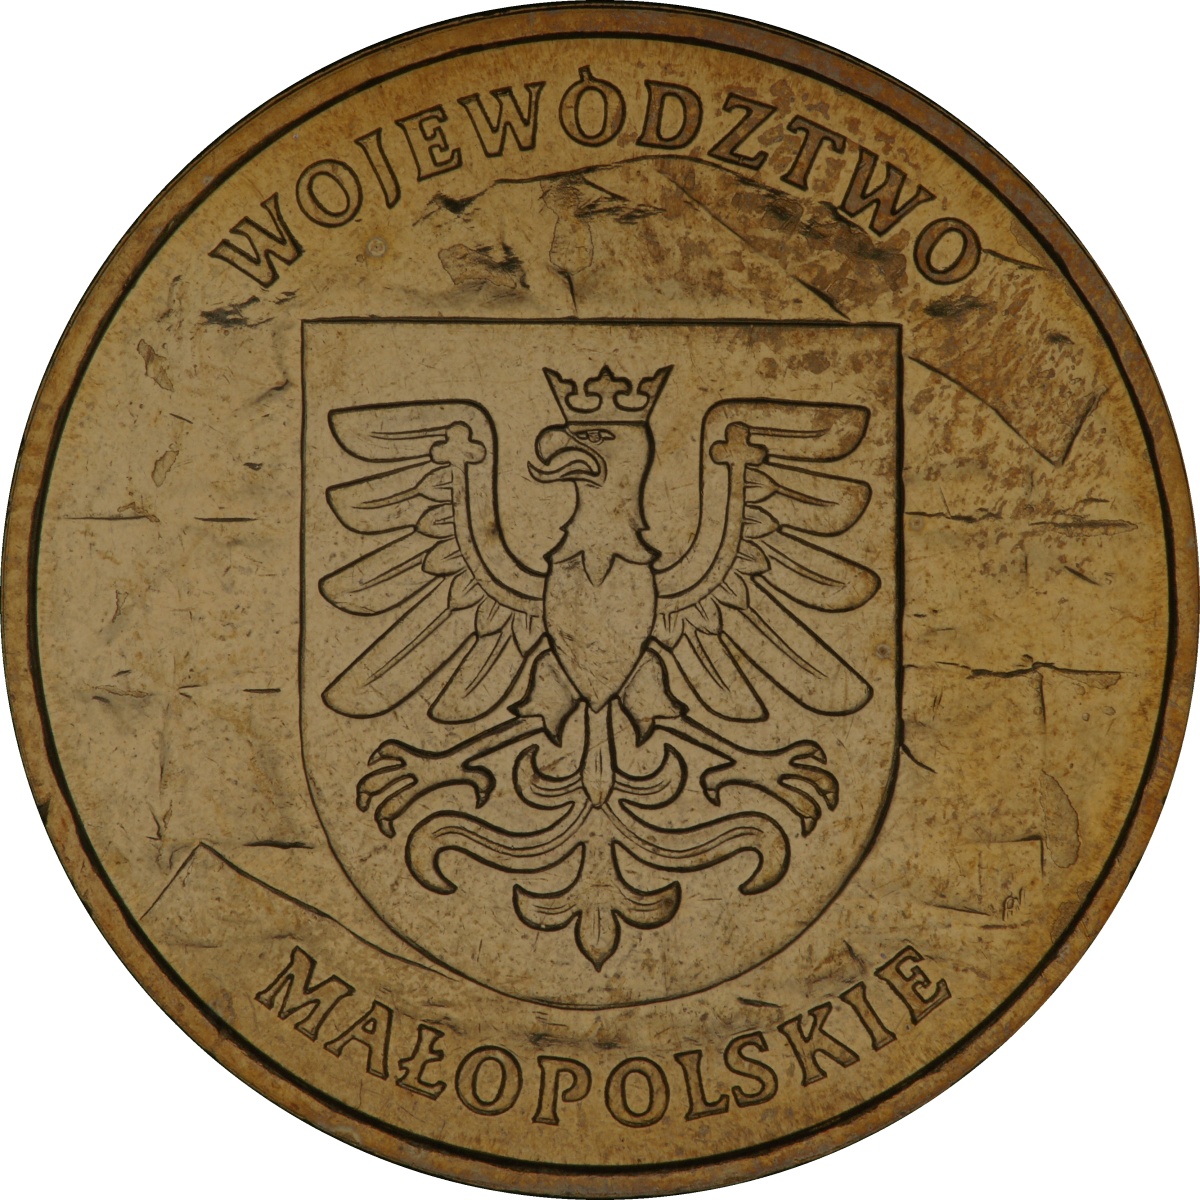 2zl-okolicznosciowe-wojewodztwo-malopolskie-rewers-monety